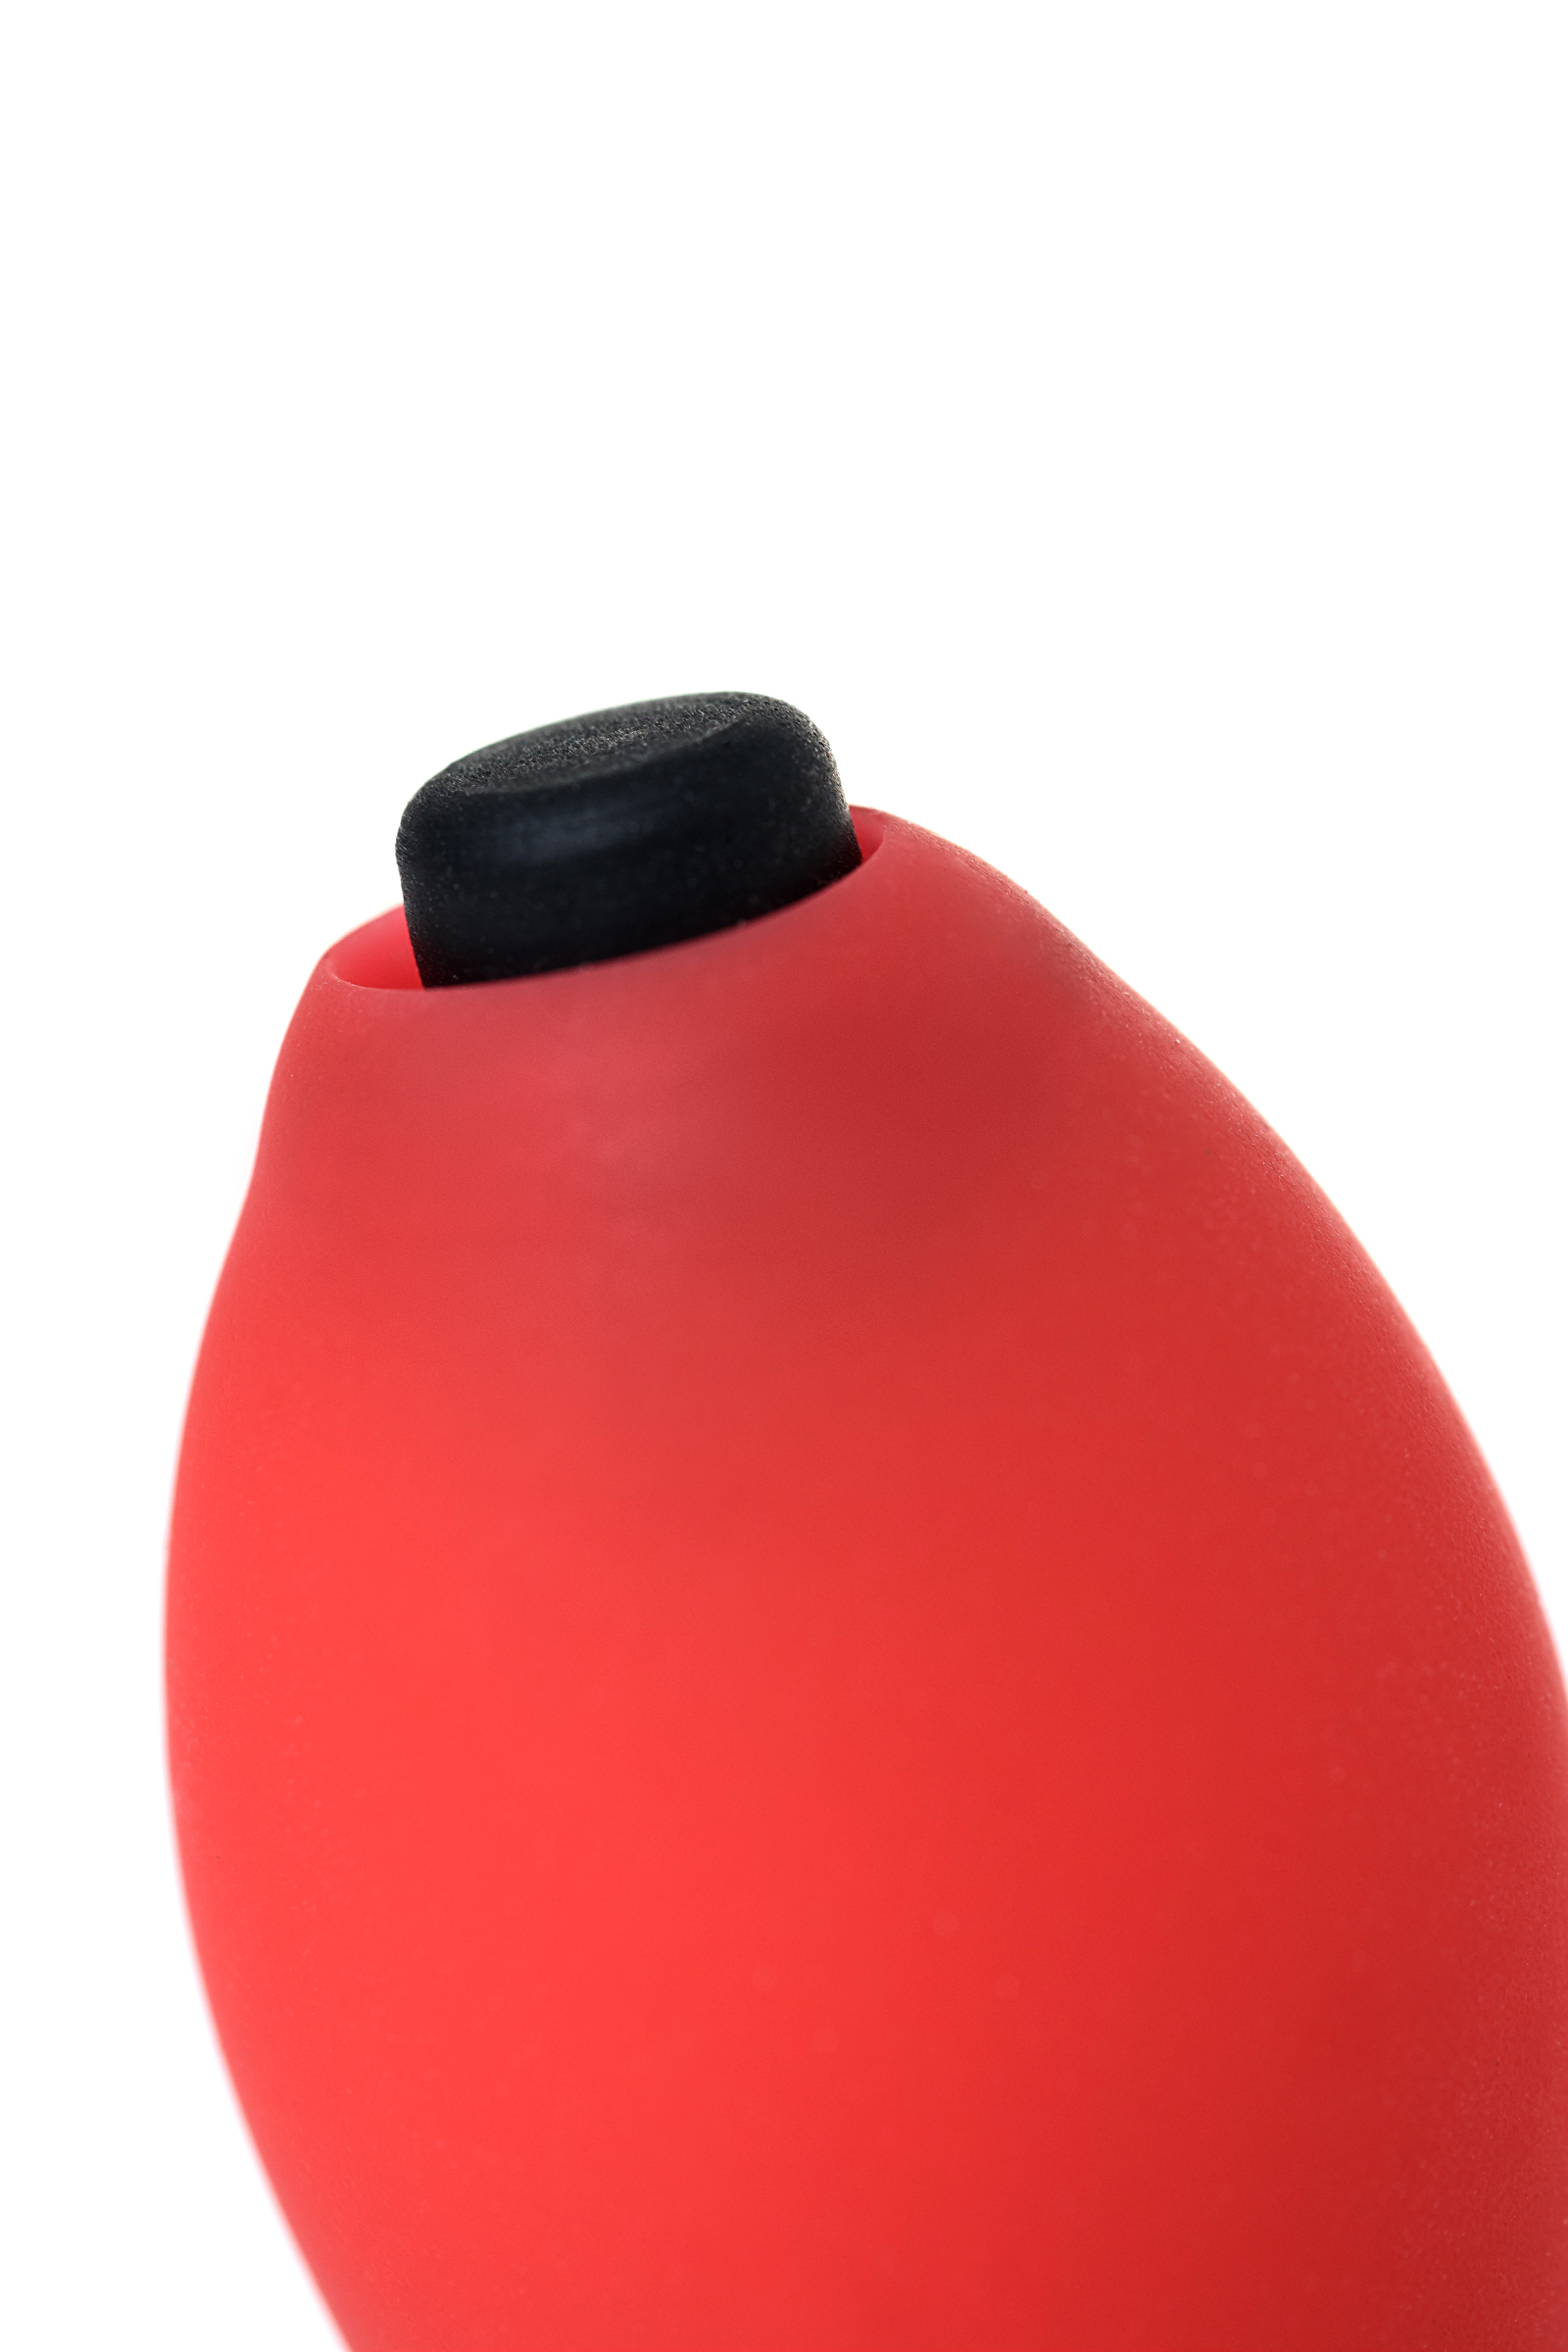 Мини-вибратор Штучки-дрючки Штучка, силикон, красный, 7,5 см. Фото N9